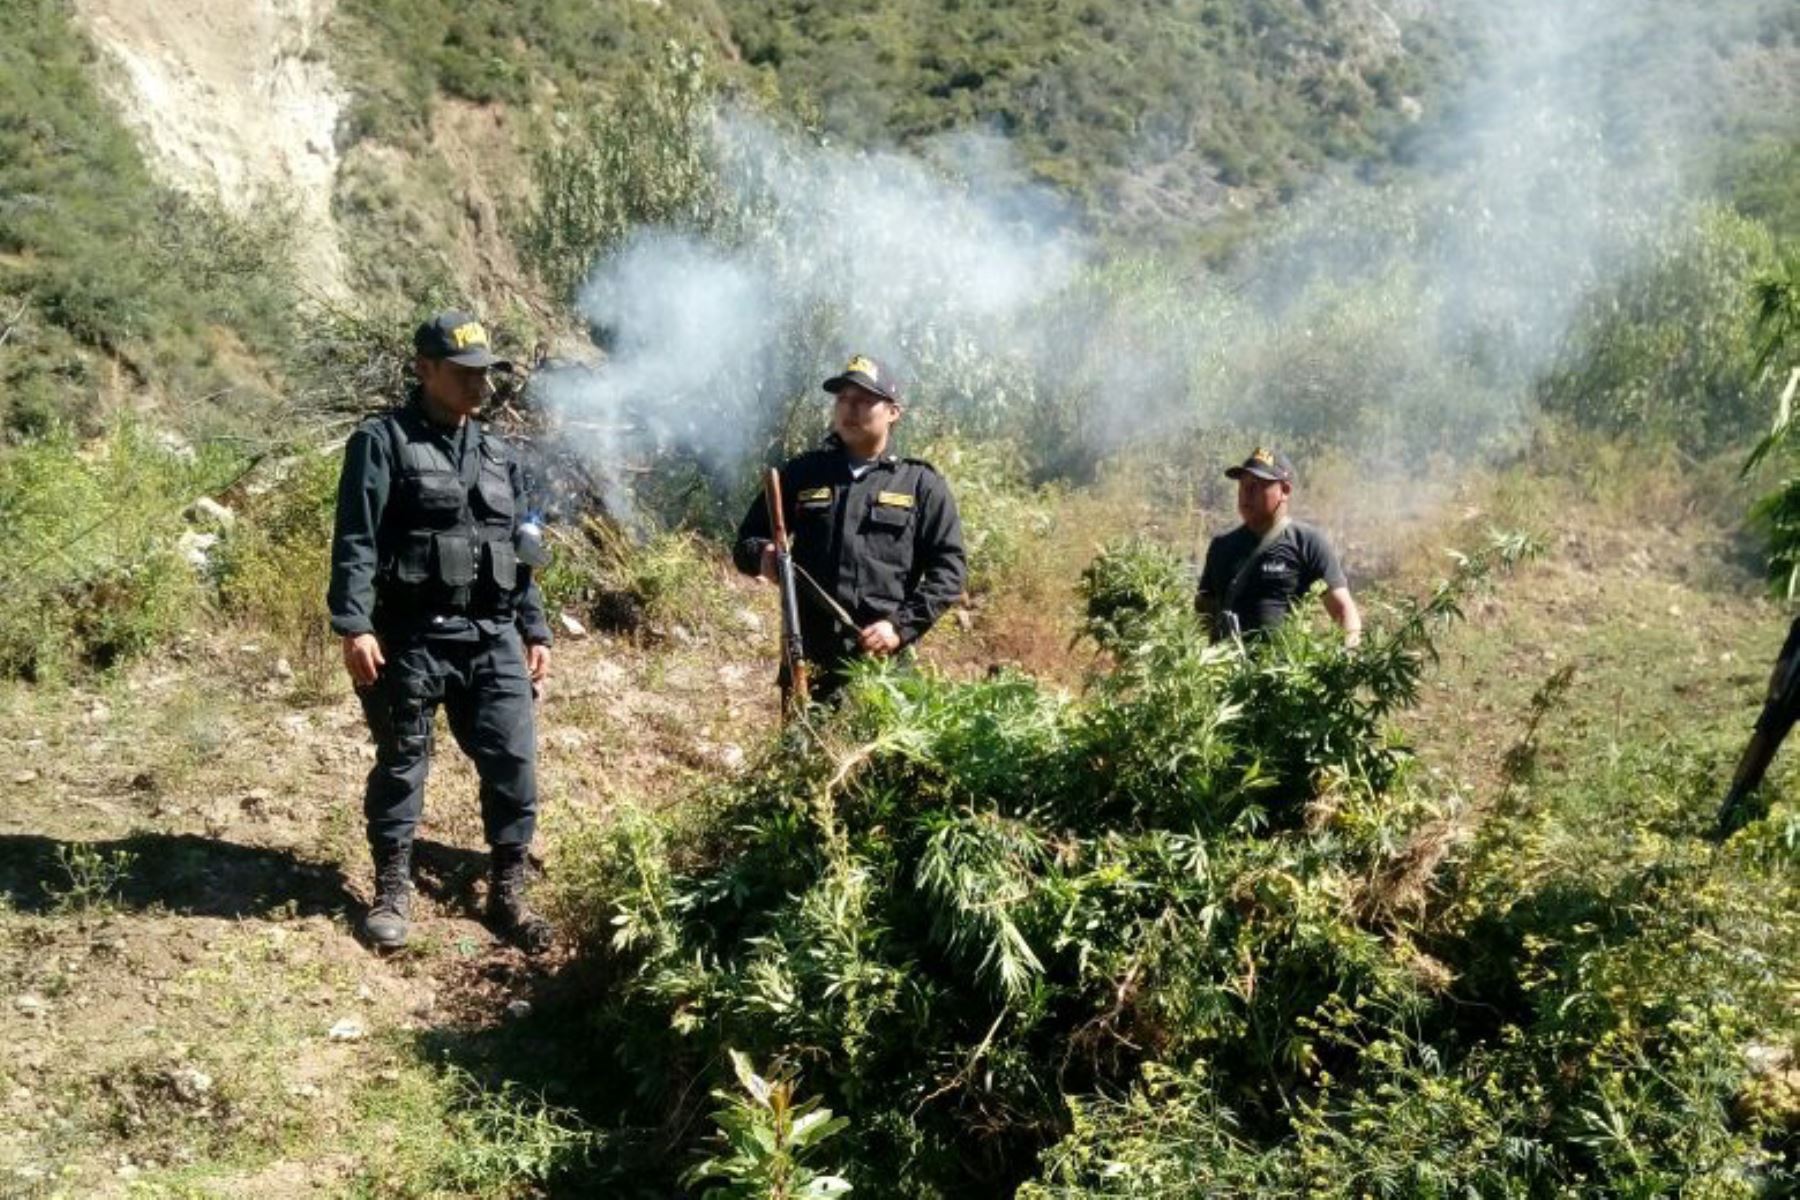 En un operativo realizado en el Valle de los ríos Apurímac, Ene y Mantaro (Vraem), agentes de la Policía Nacional del Perú (PNP) decomisaron 160 paquetes de cocaína y detuvieron a siete personas en el distrito de Kimbiri, ubicado en la provincia cusqueña de La Convención.